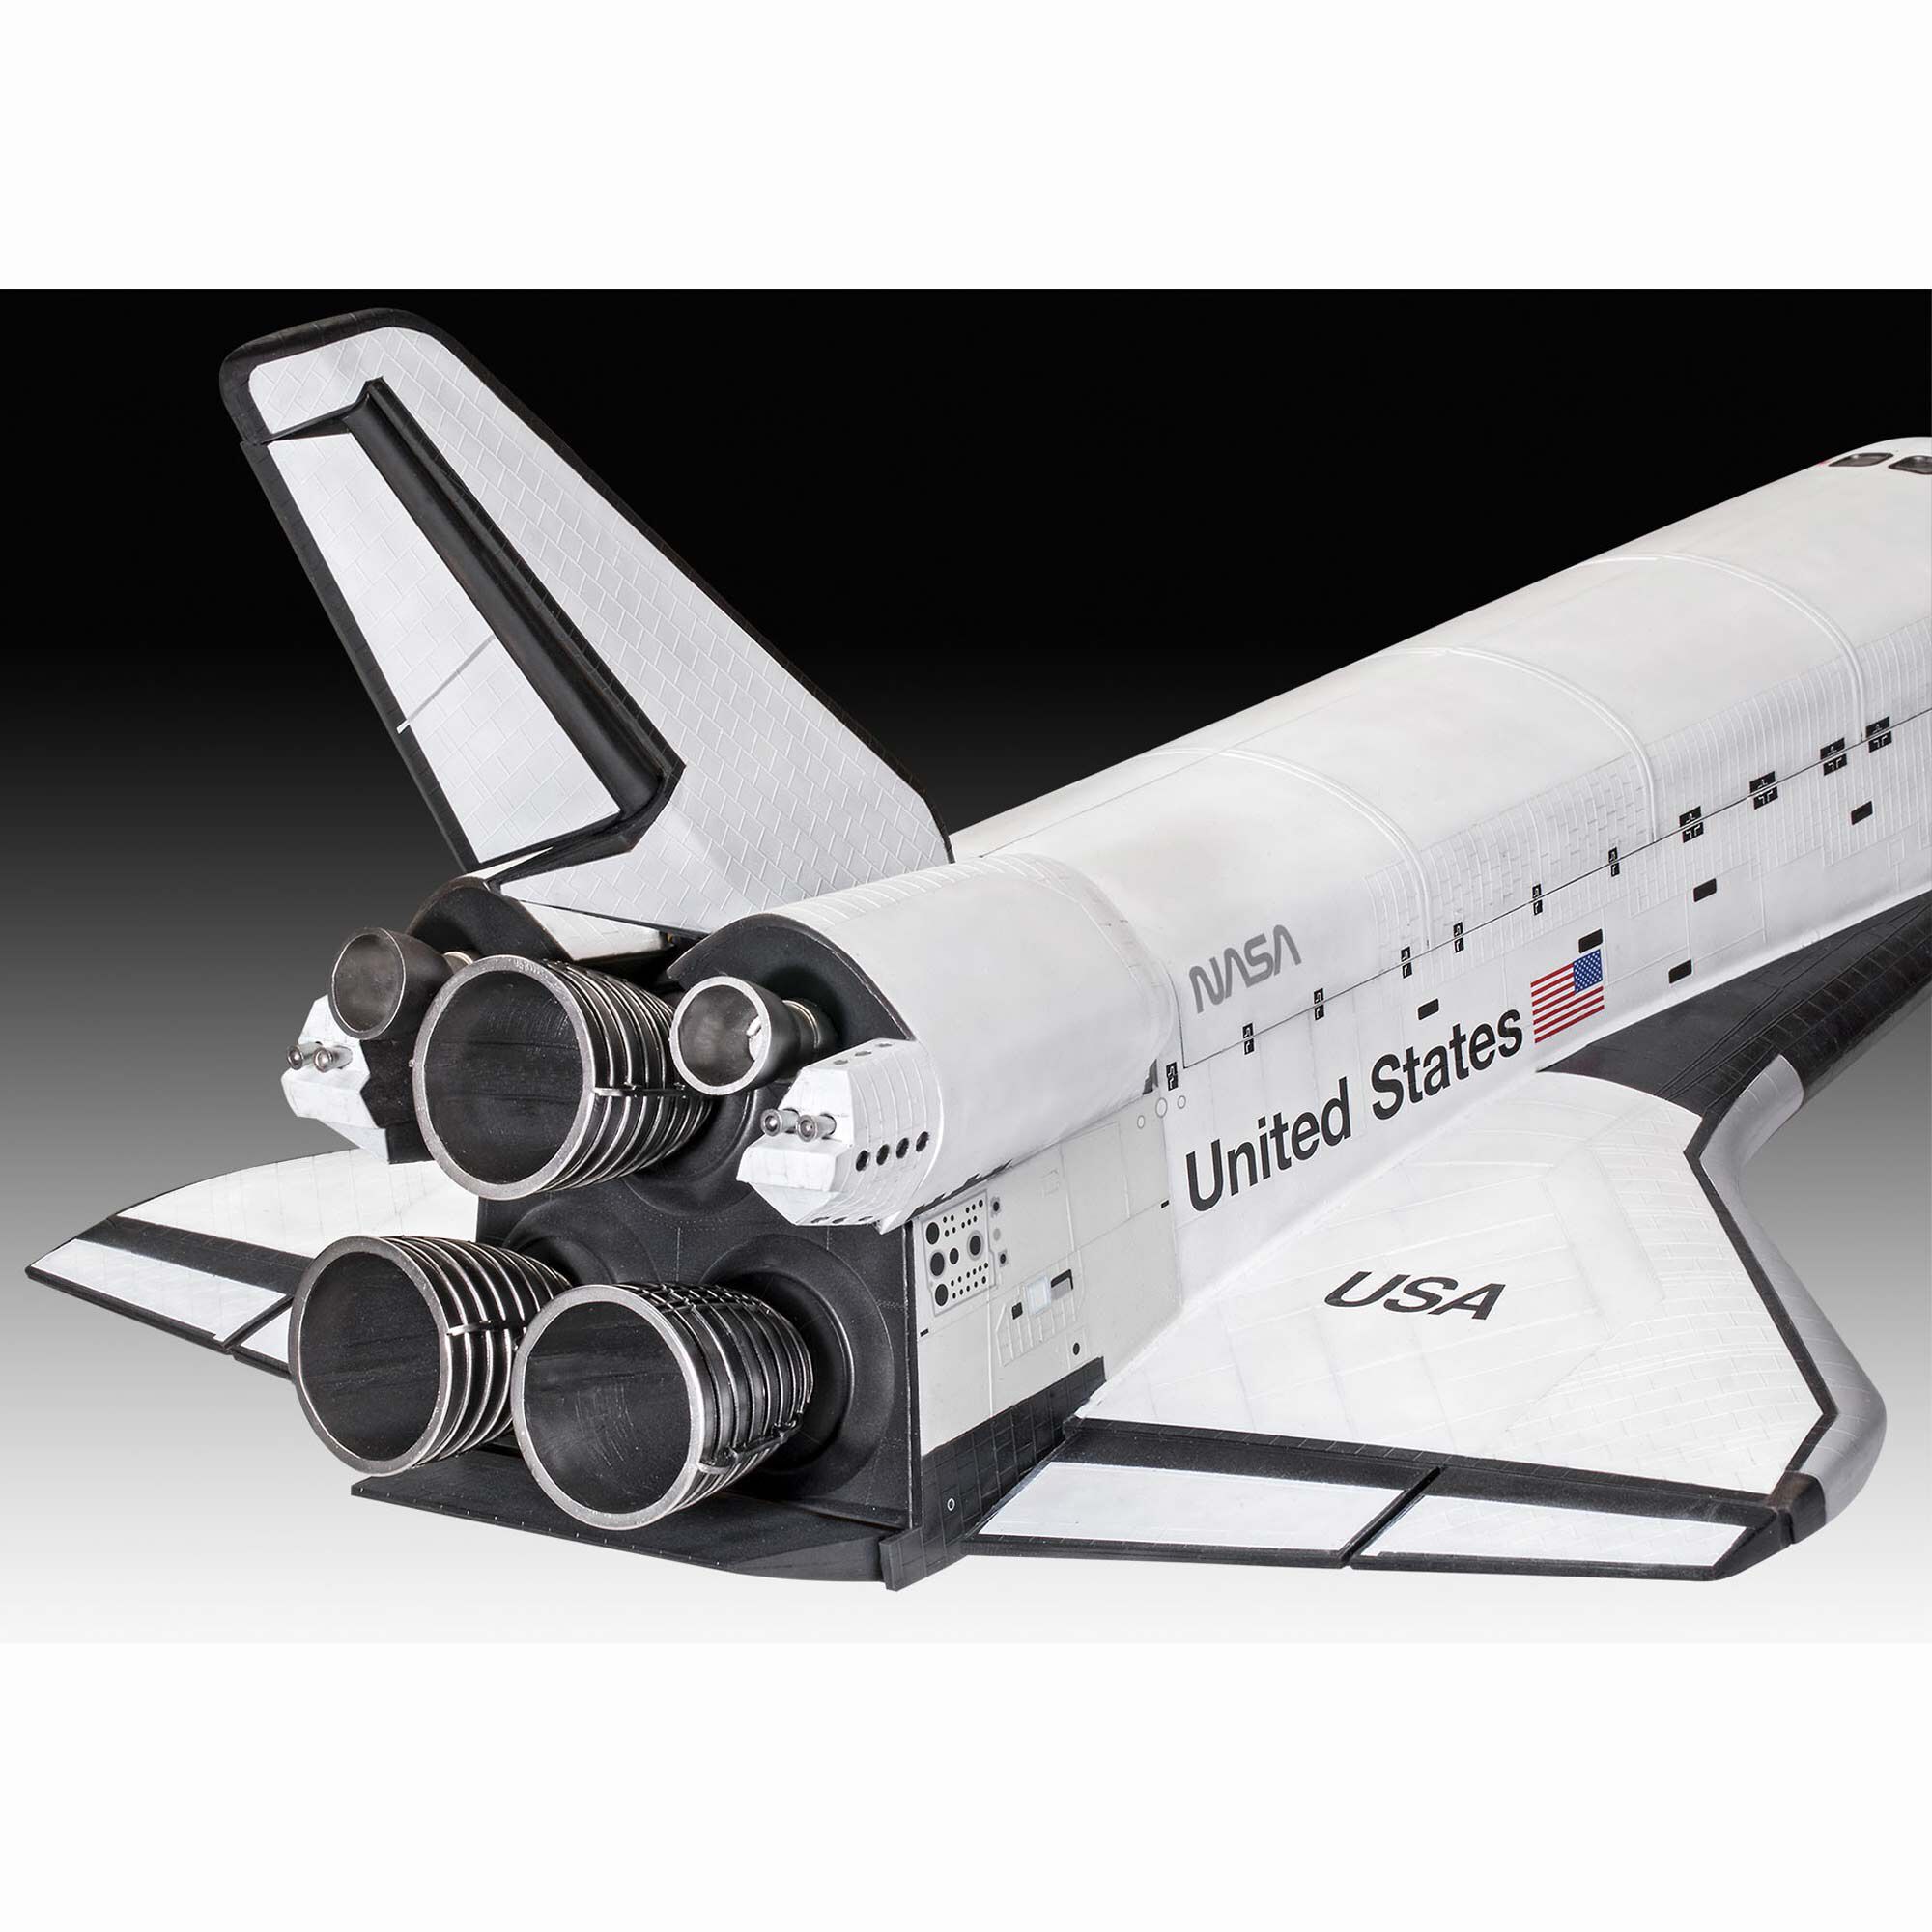 1988 Discovery Shuttle Orbiter Revell Model Kit 1 72 for sale online 